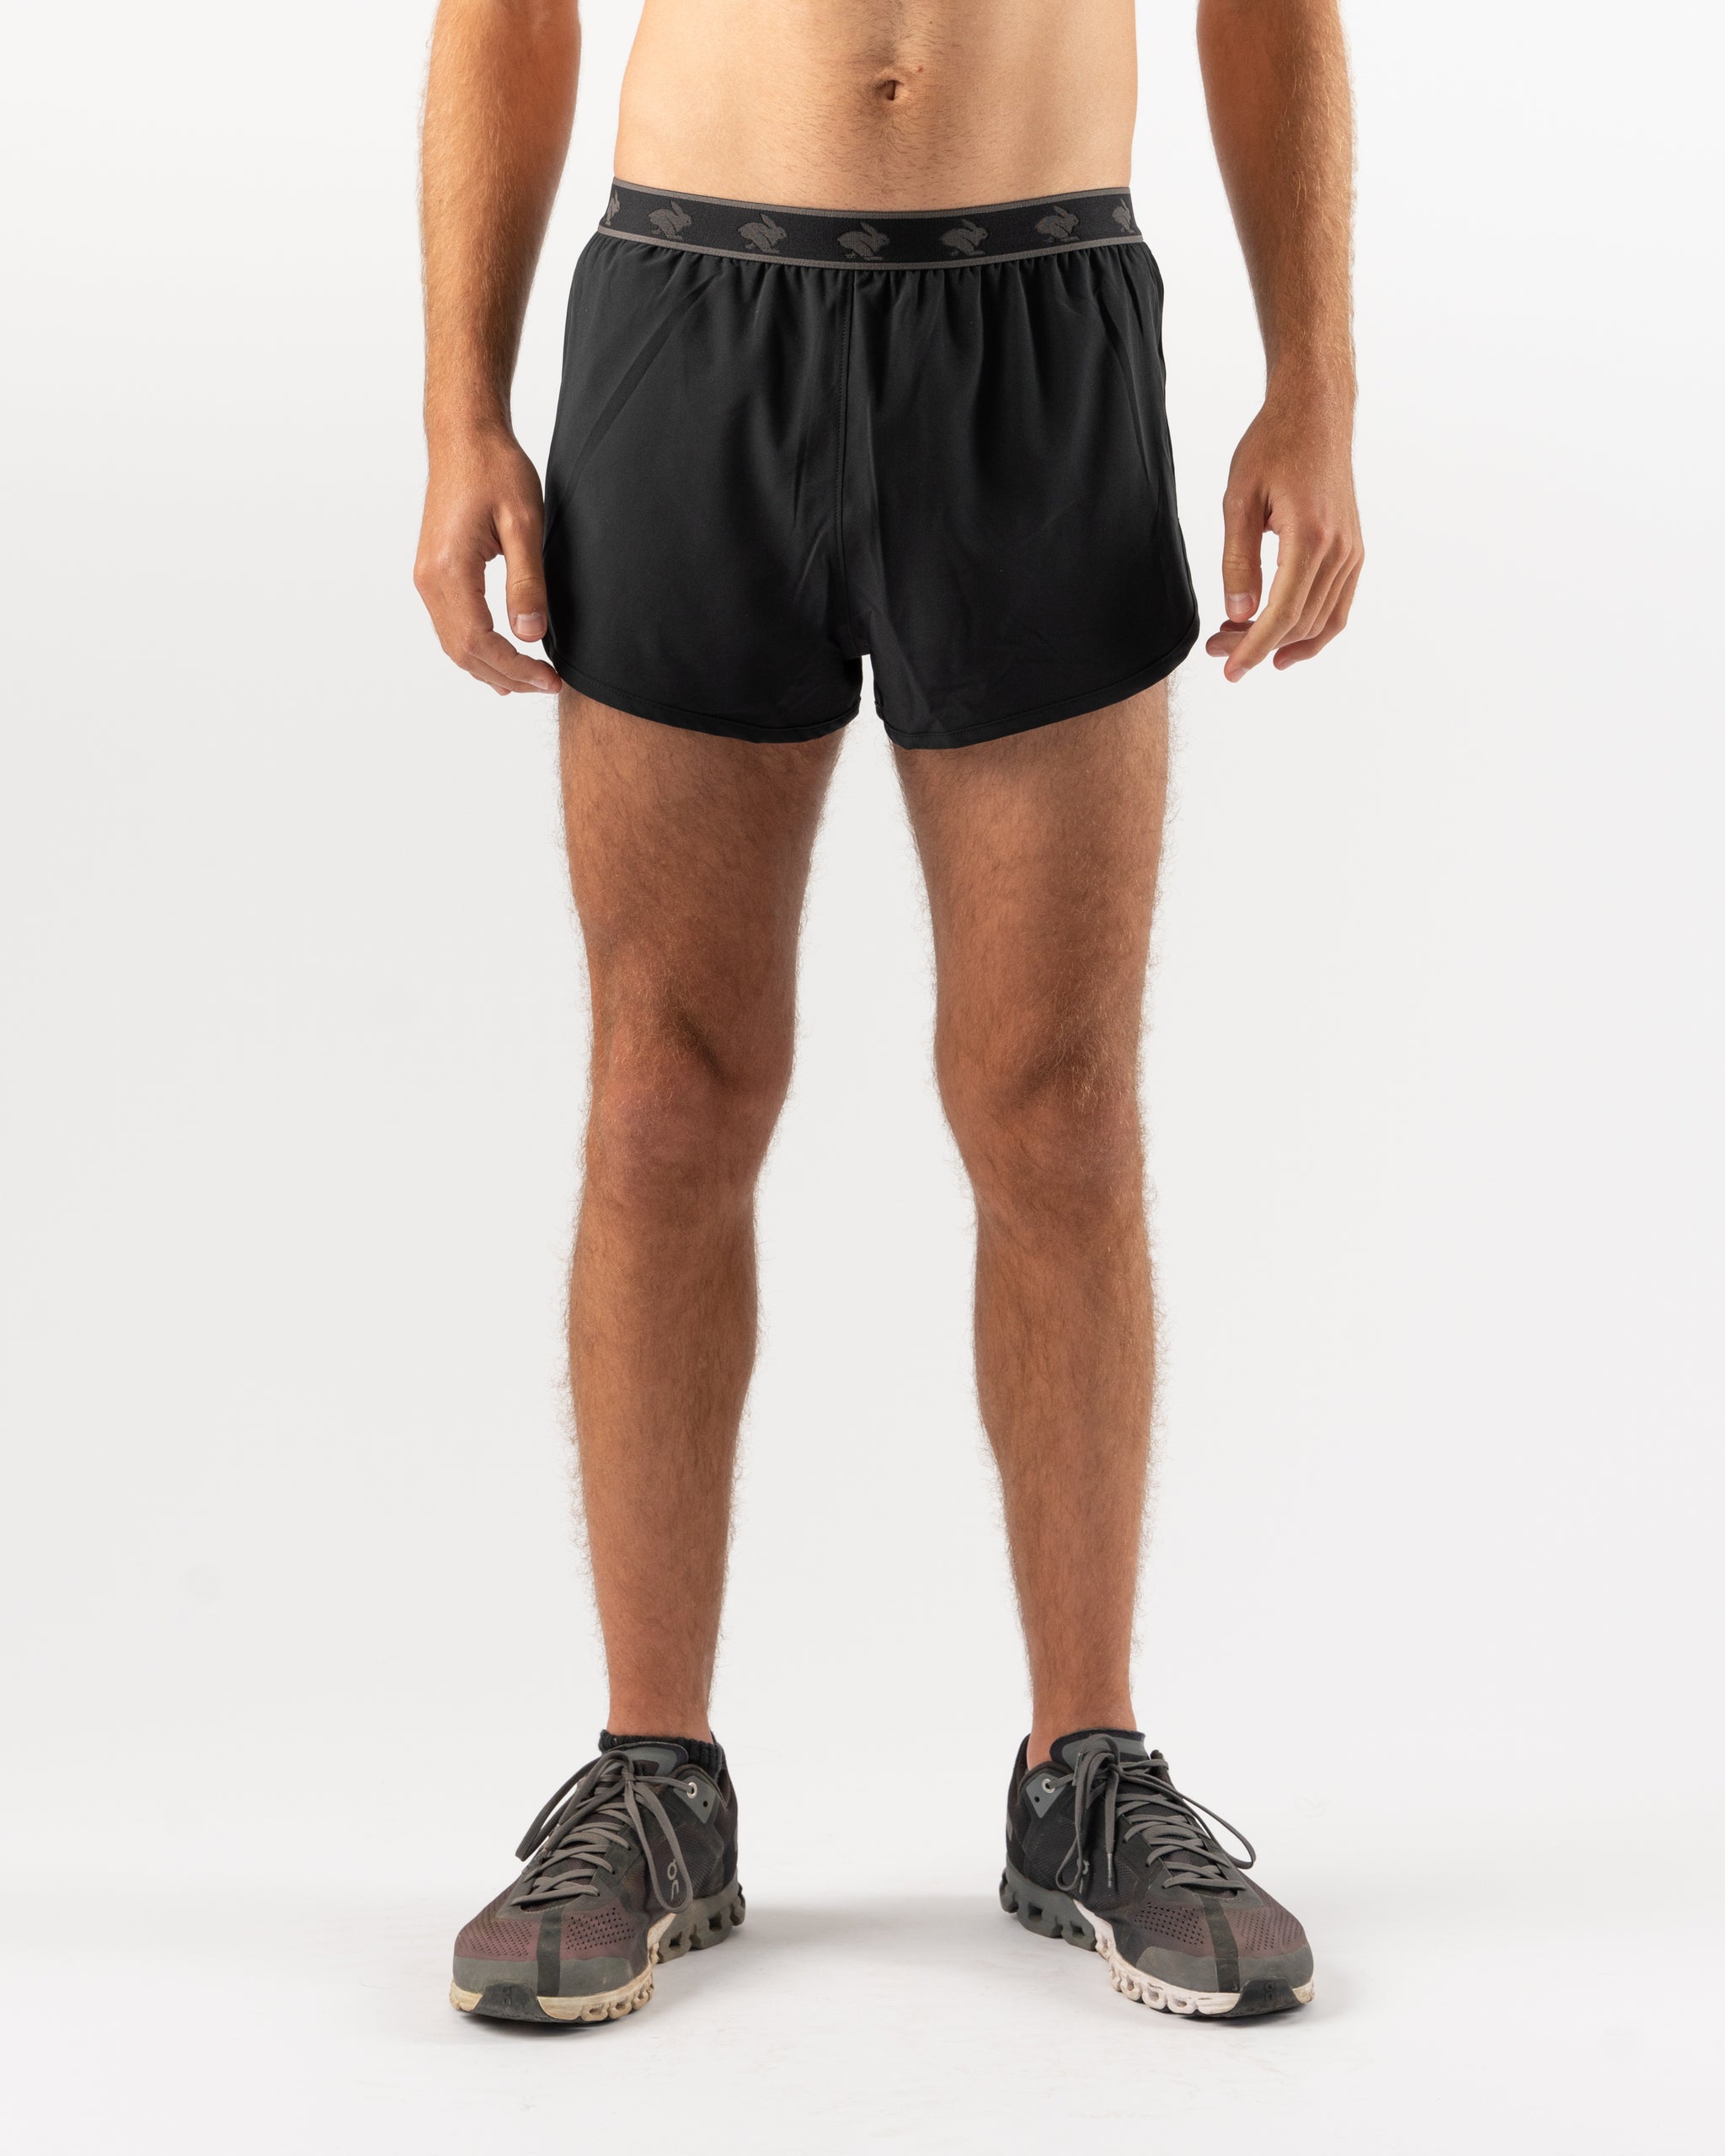 Unisex Running Shorts 2 In 1 Inner Tights Jogging Shorts Longer